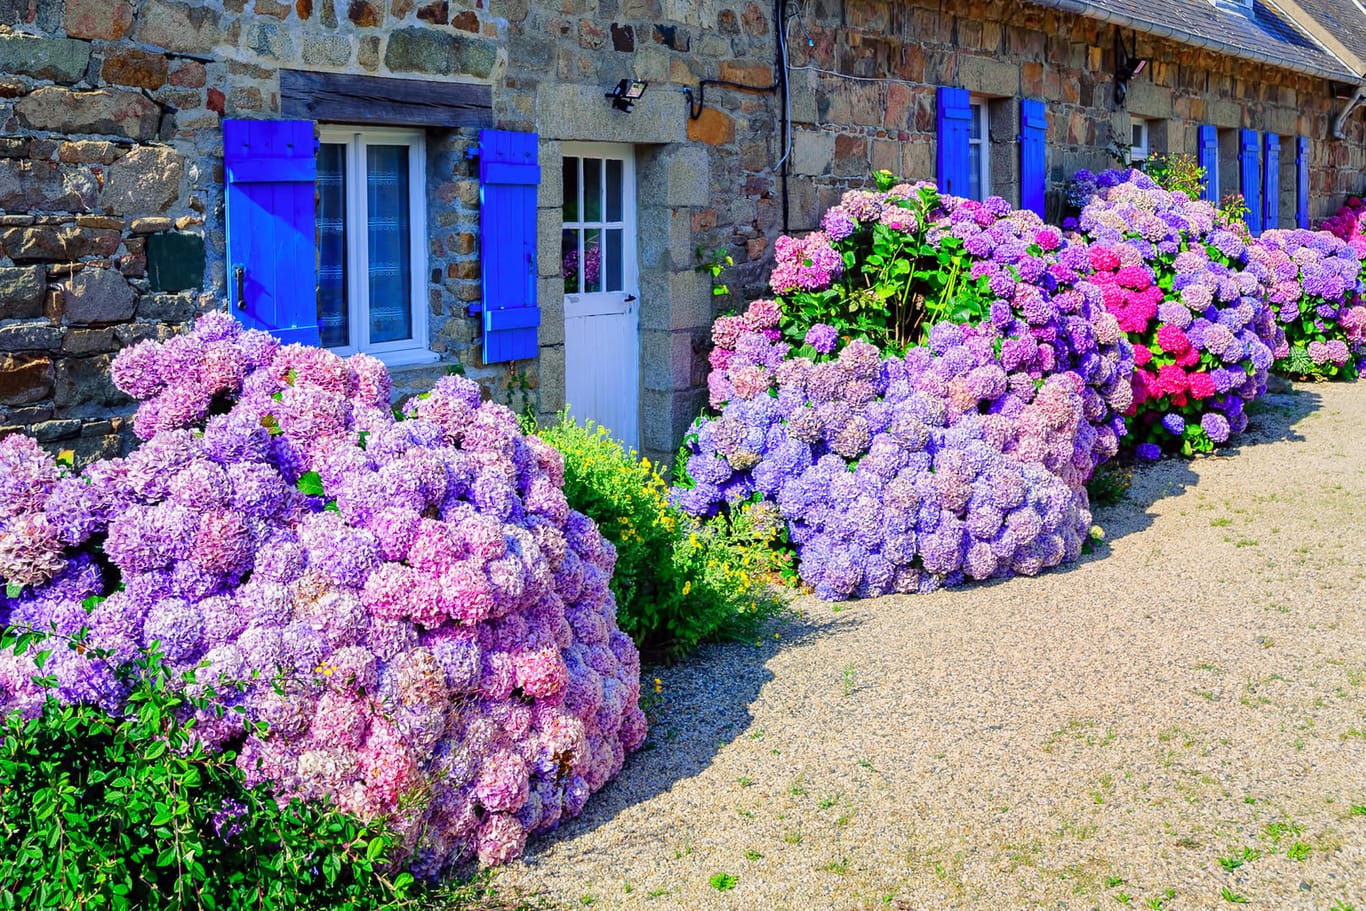 Hortensien in der Bretagne: Damit die Pflanzen richtig blühen, braucht es ideale Bodenverhältnisse.